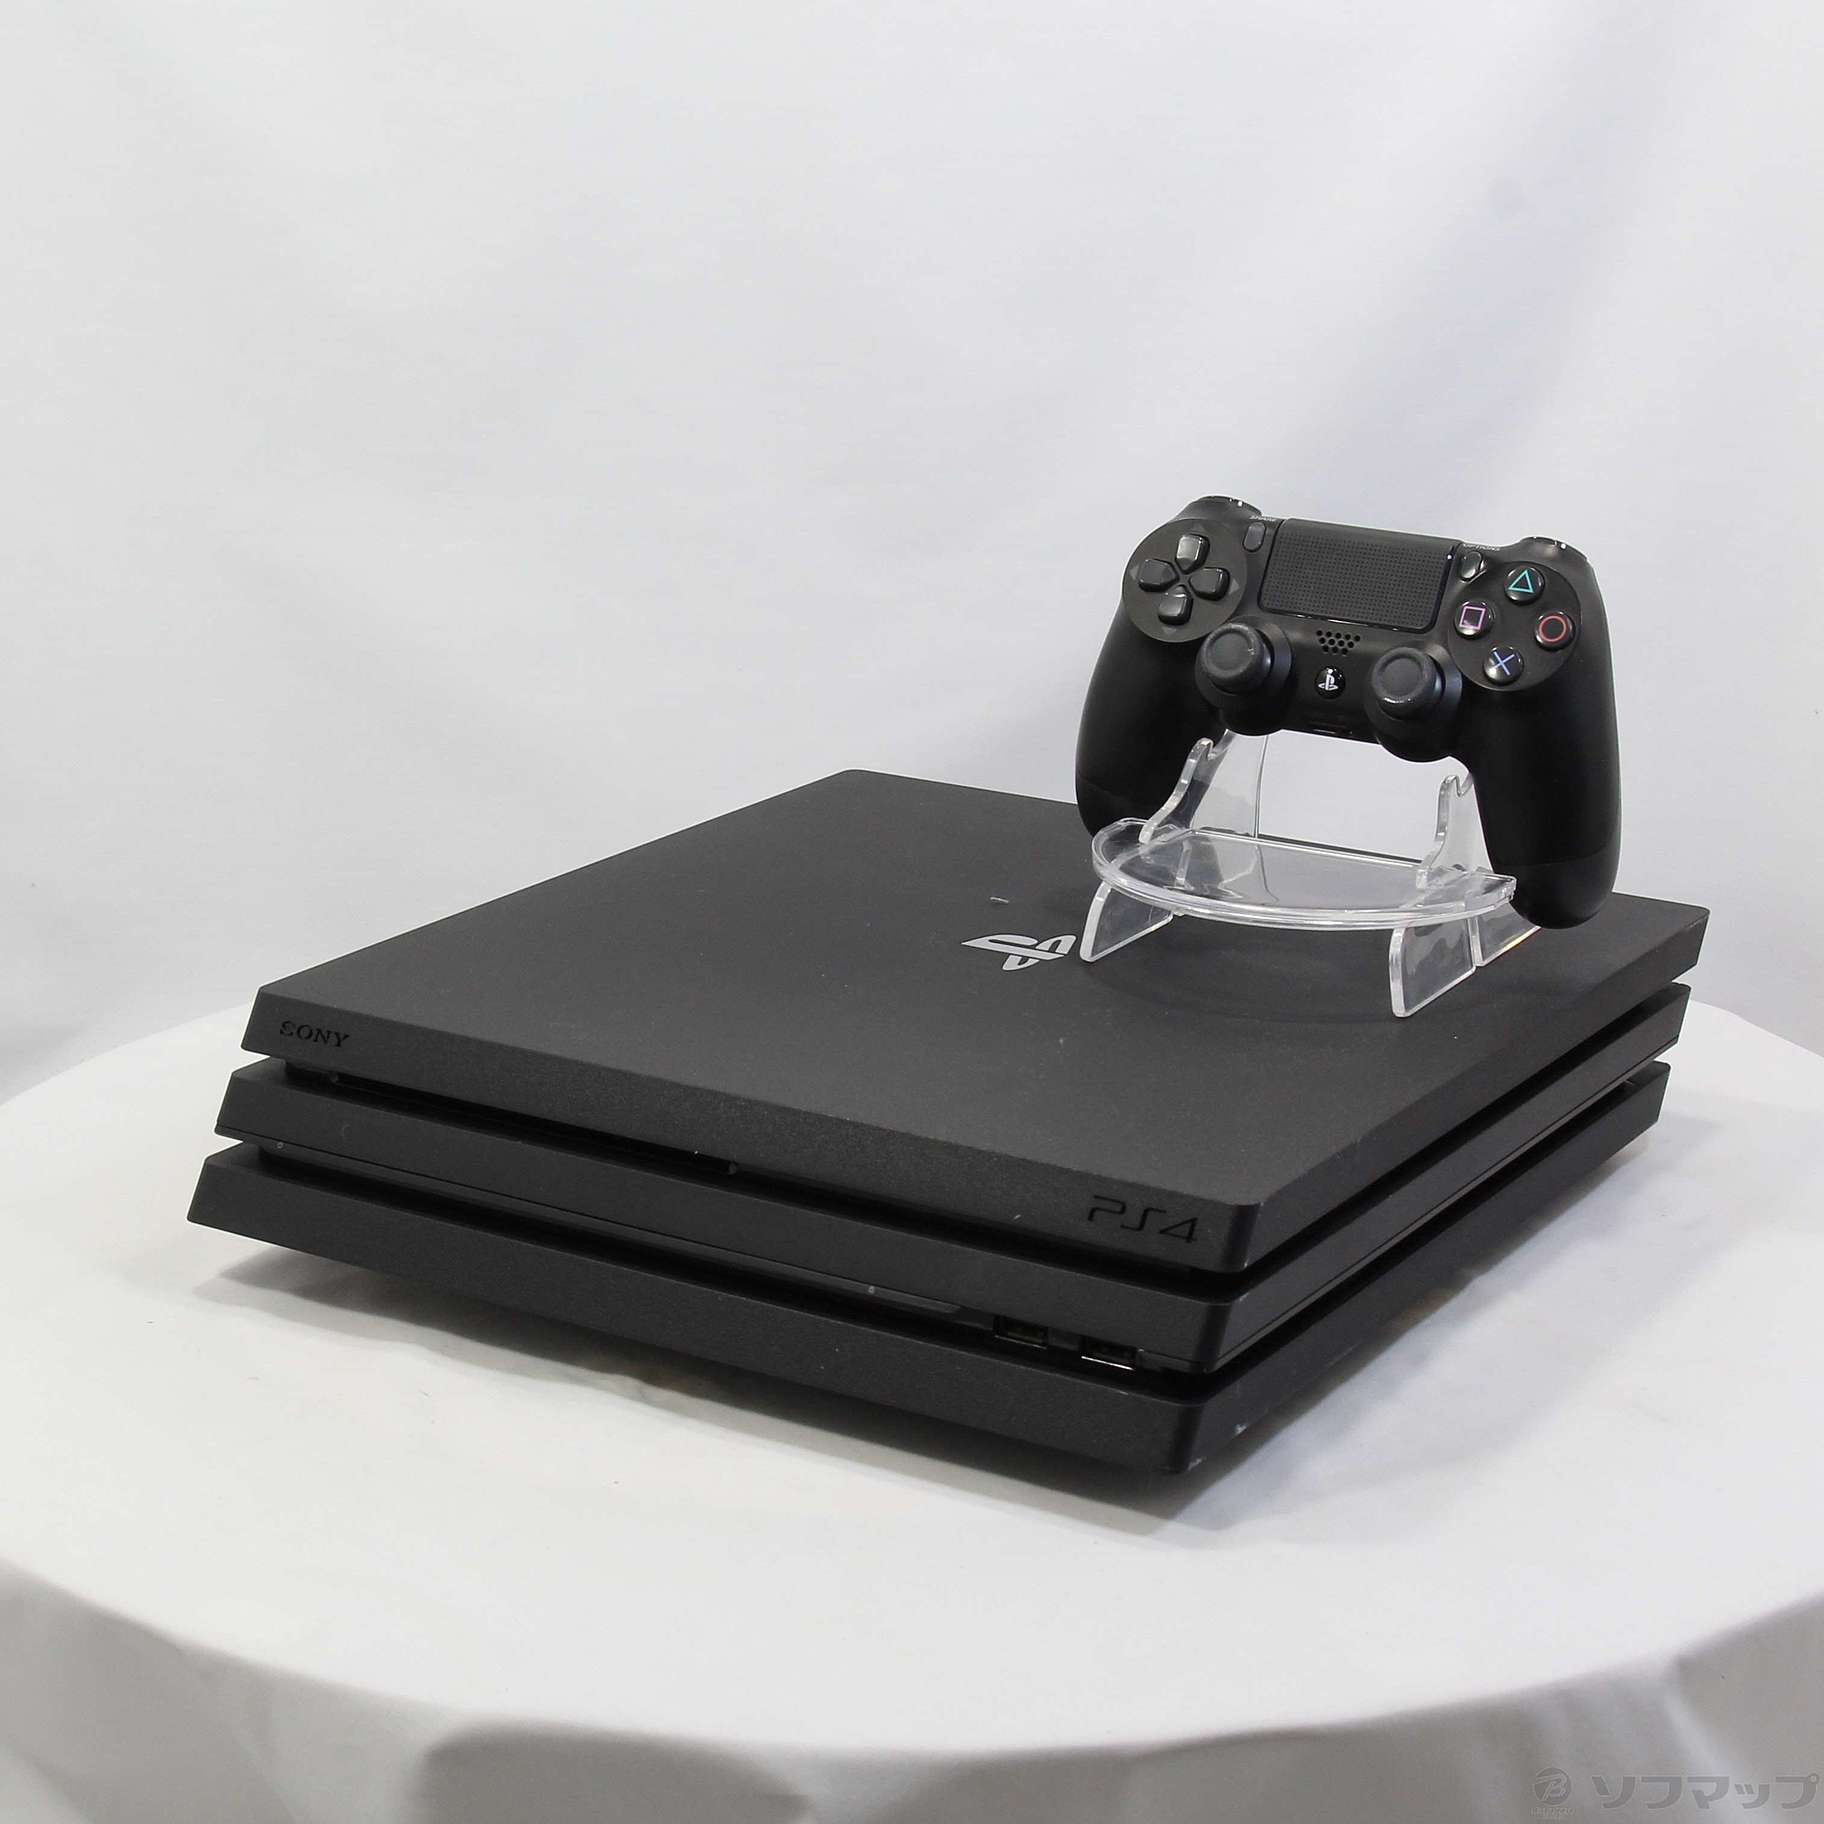 PlayStation®4 Pro ジェット・ブラック 1TB本体